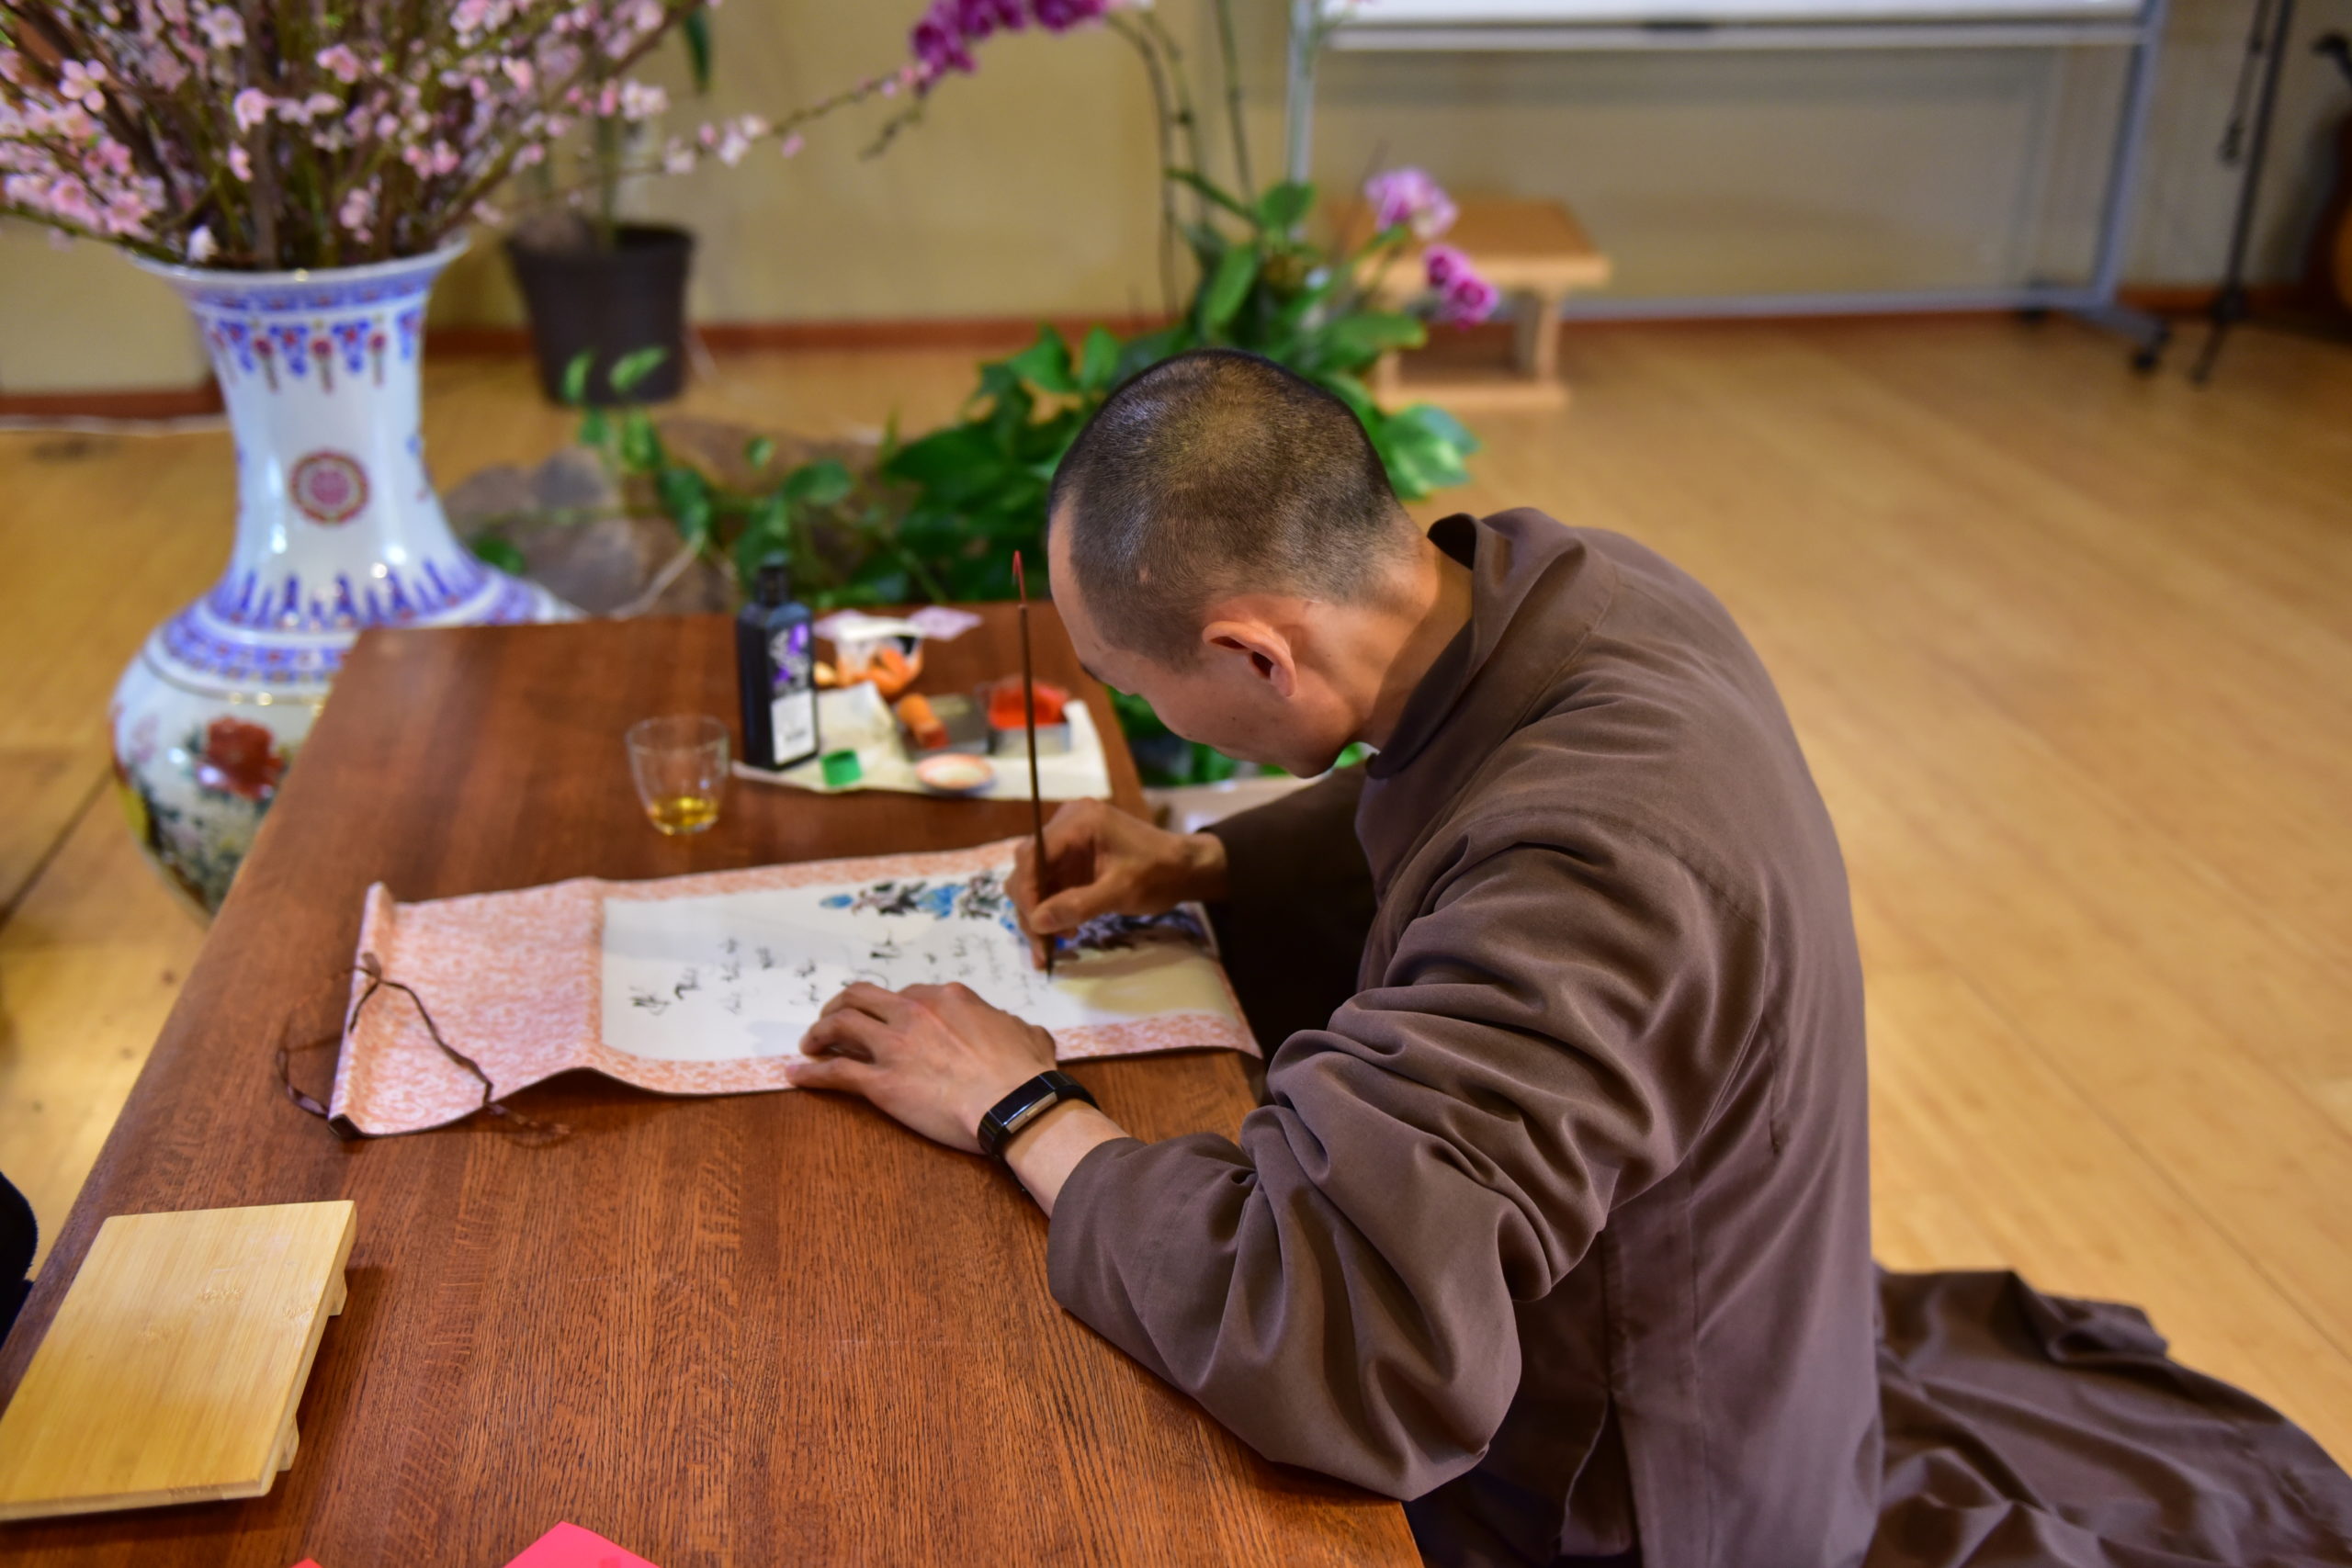 2nd Day of Tết: Oracle Reading (Bói Kiều tại Thiền Đường Lớn)